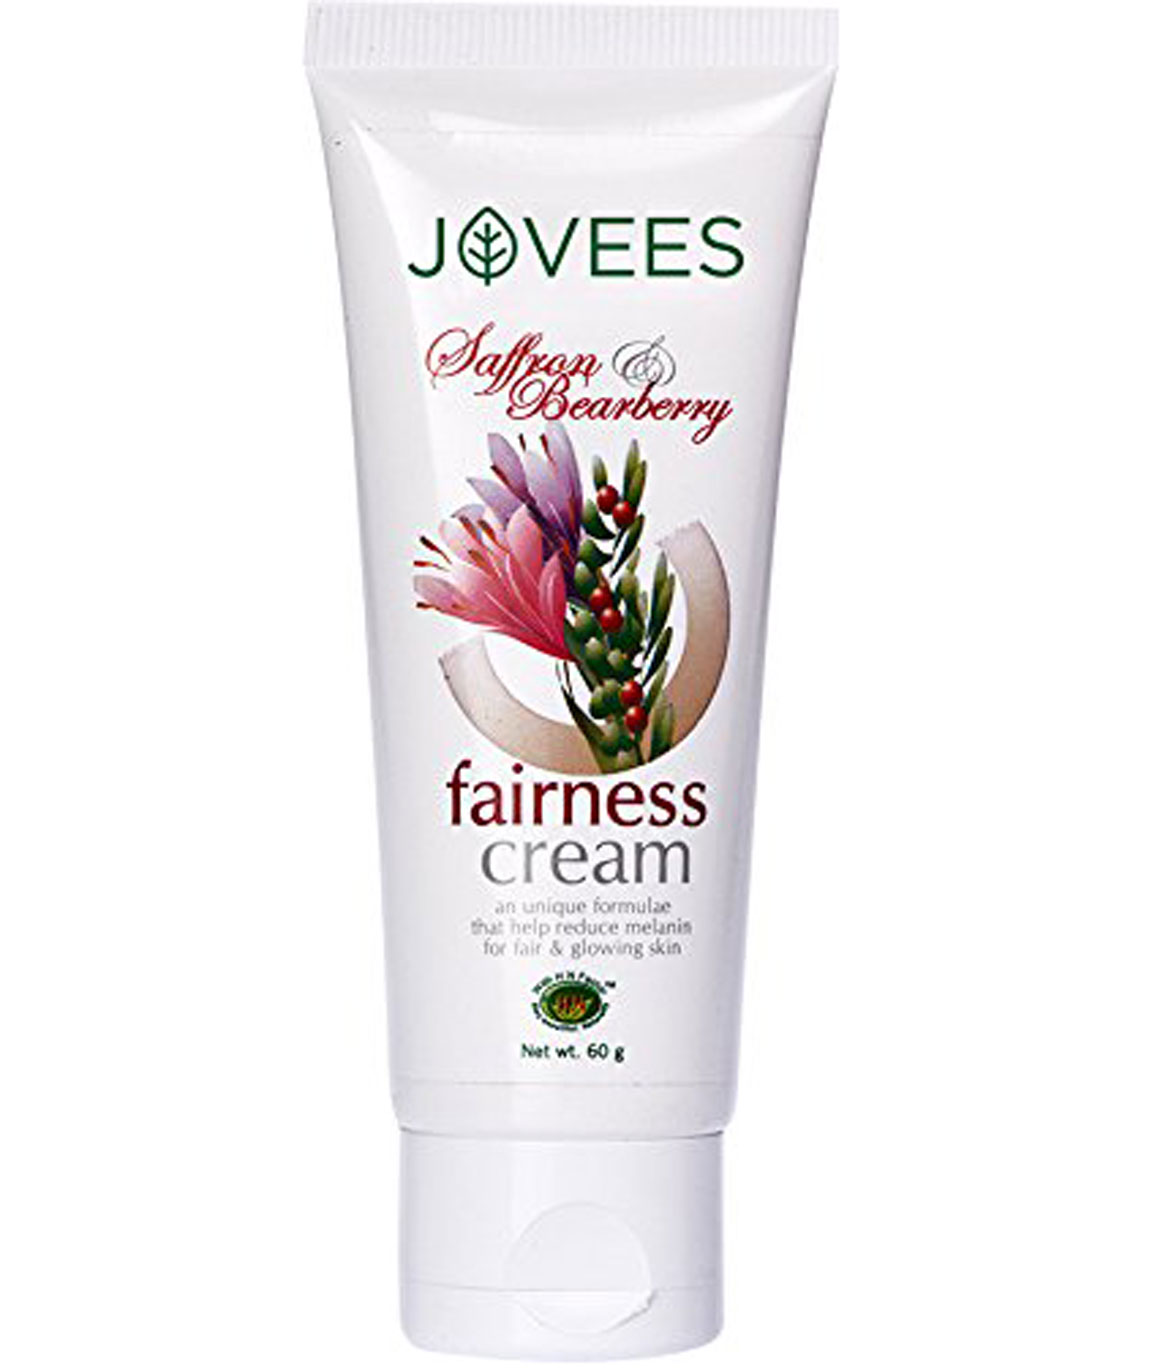 Jovees Saffron Bearberry Fairness Cream, 60gm